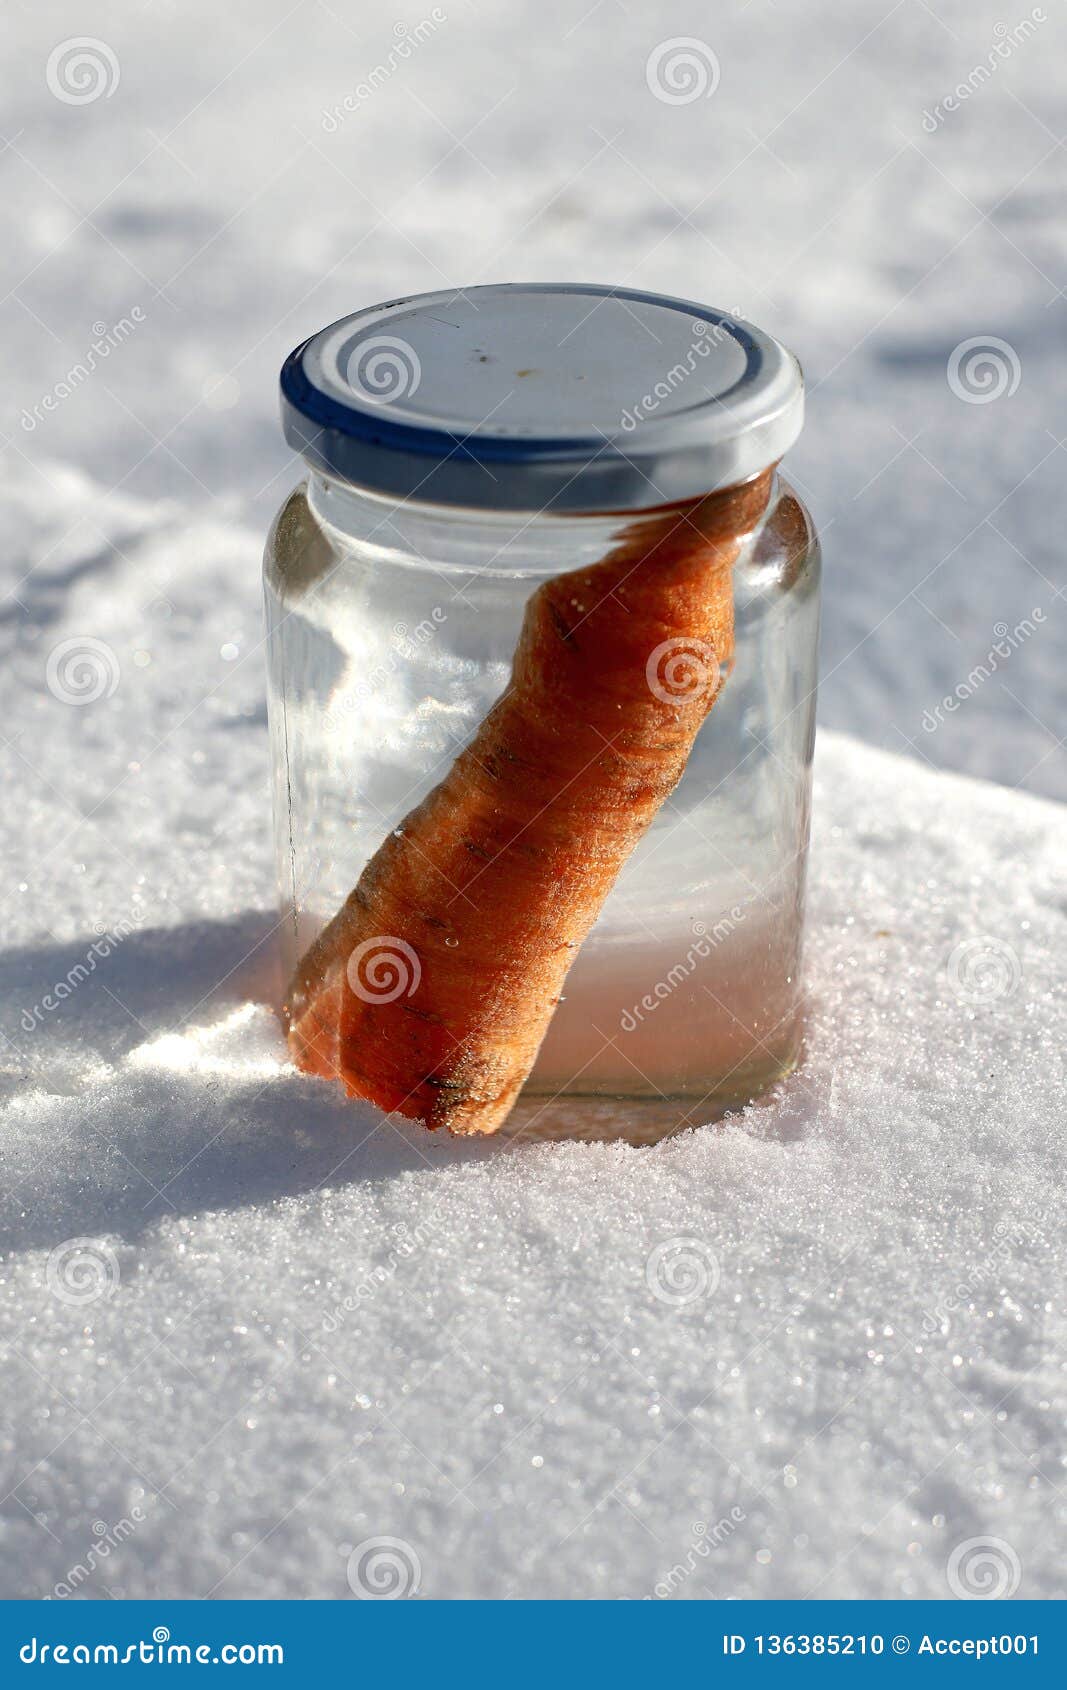 https://thumbs.dreamstime.com/z/sun-comes-out-snowman-melting-garten-snowman-waiting-resurrection-mason-jar-melted-136385210.jpg